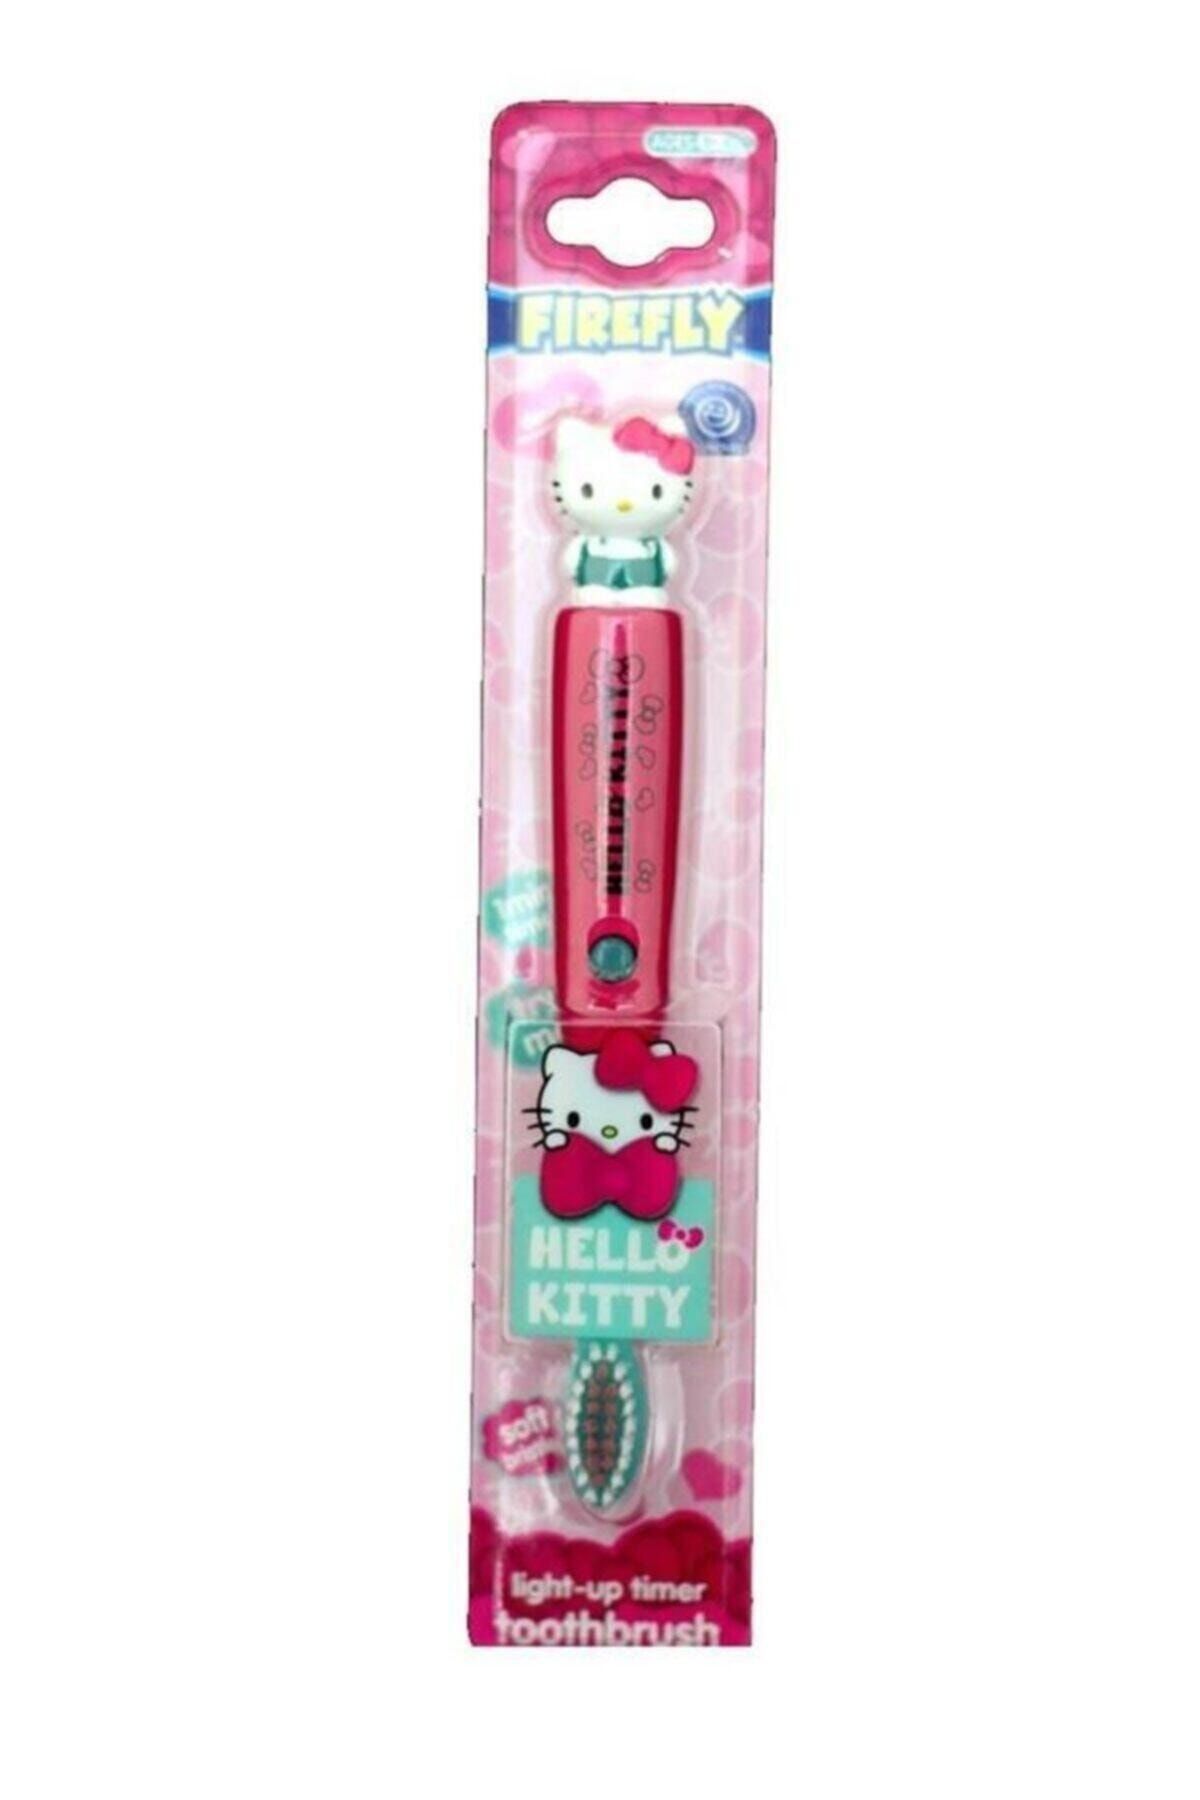 Hello Kitty Firefly Çocuklar Için Işılkı Diş Fırçası 3+ Yaş